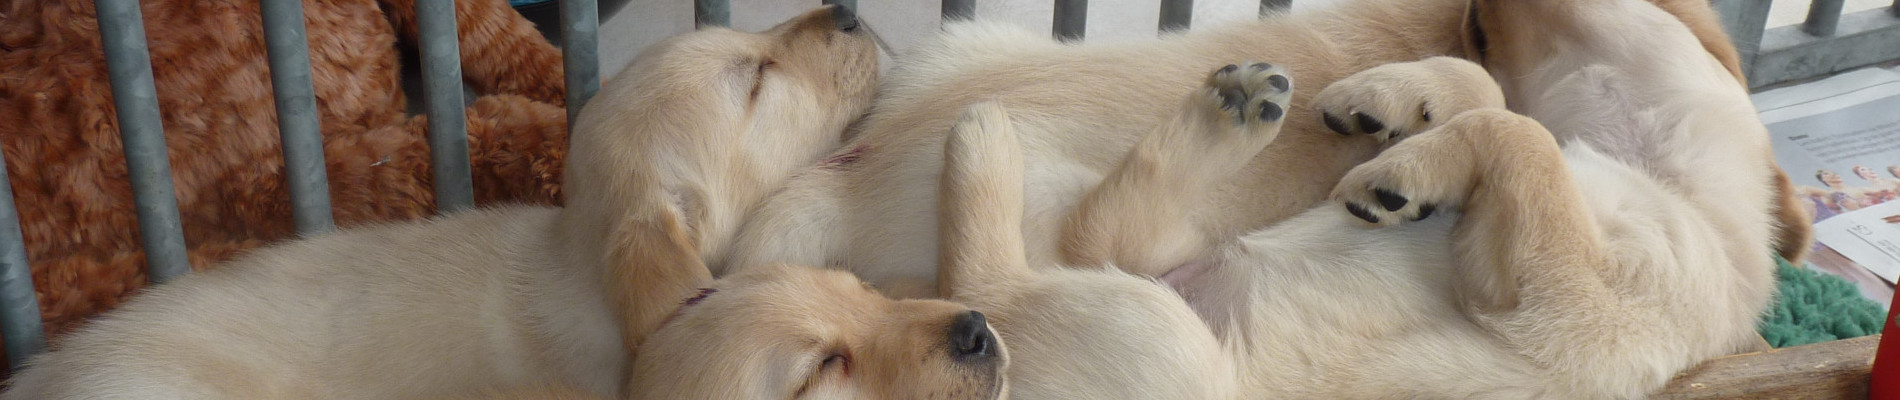 houten speelgoedwagentje met slapende pups